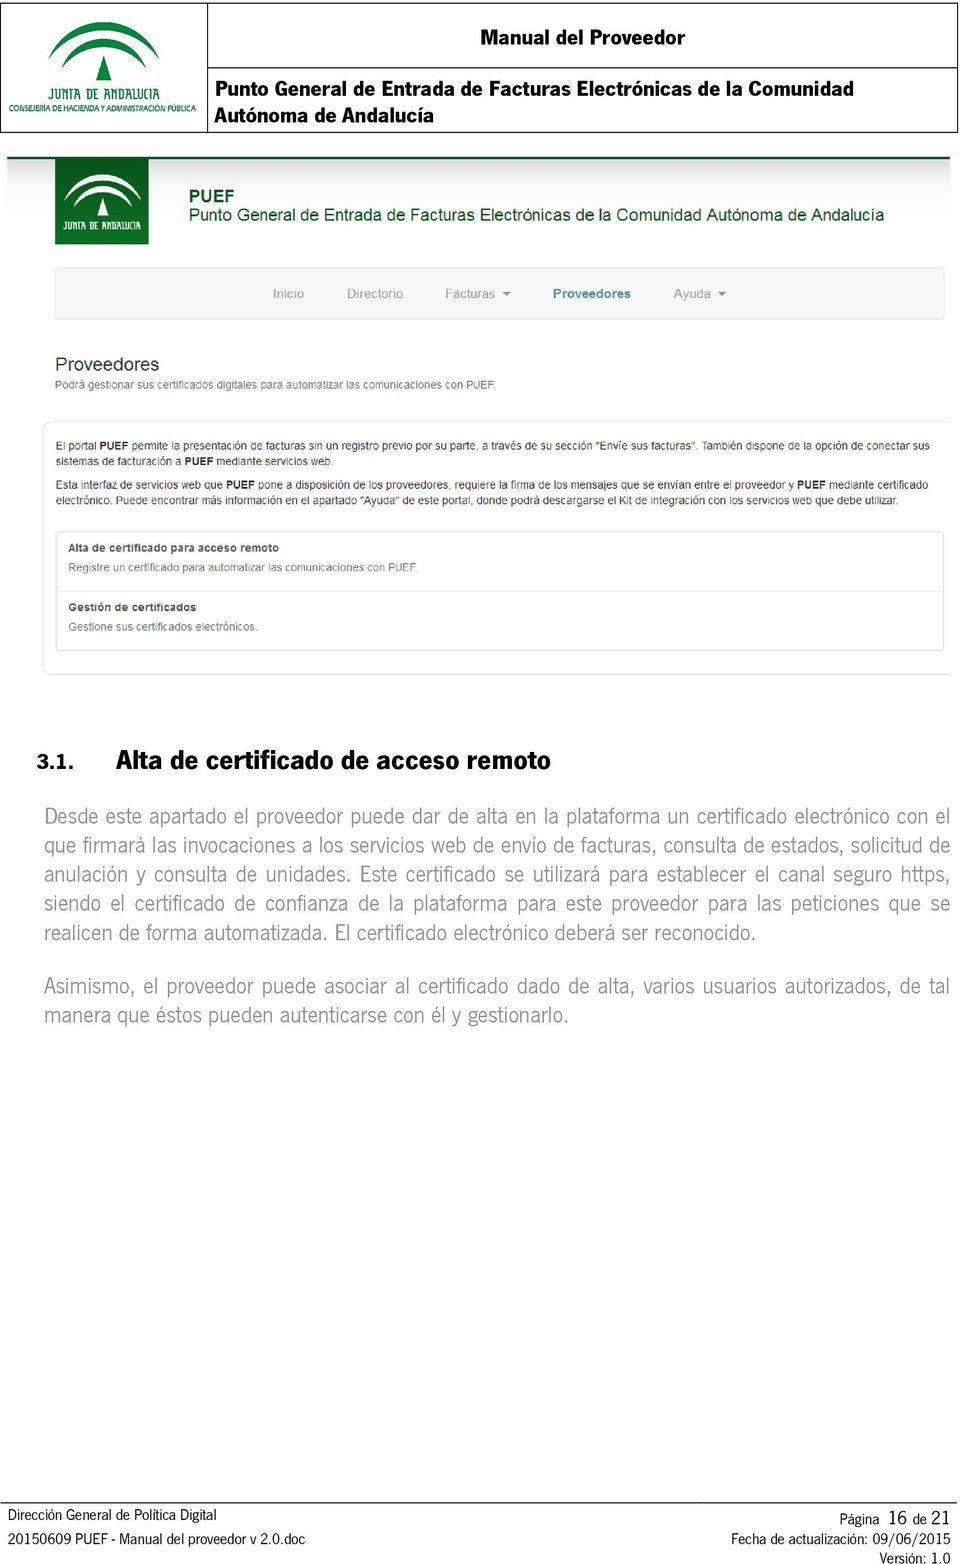 Este certificado se utilizará para establecer el canal seguro https, siendo el certificado de confianza de la plataforma para este proveedor para las peticiones que se realicen de forma